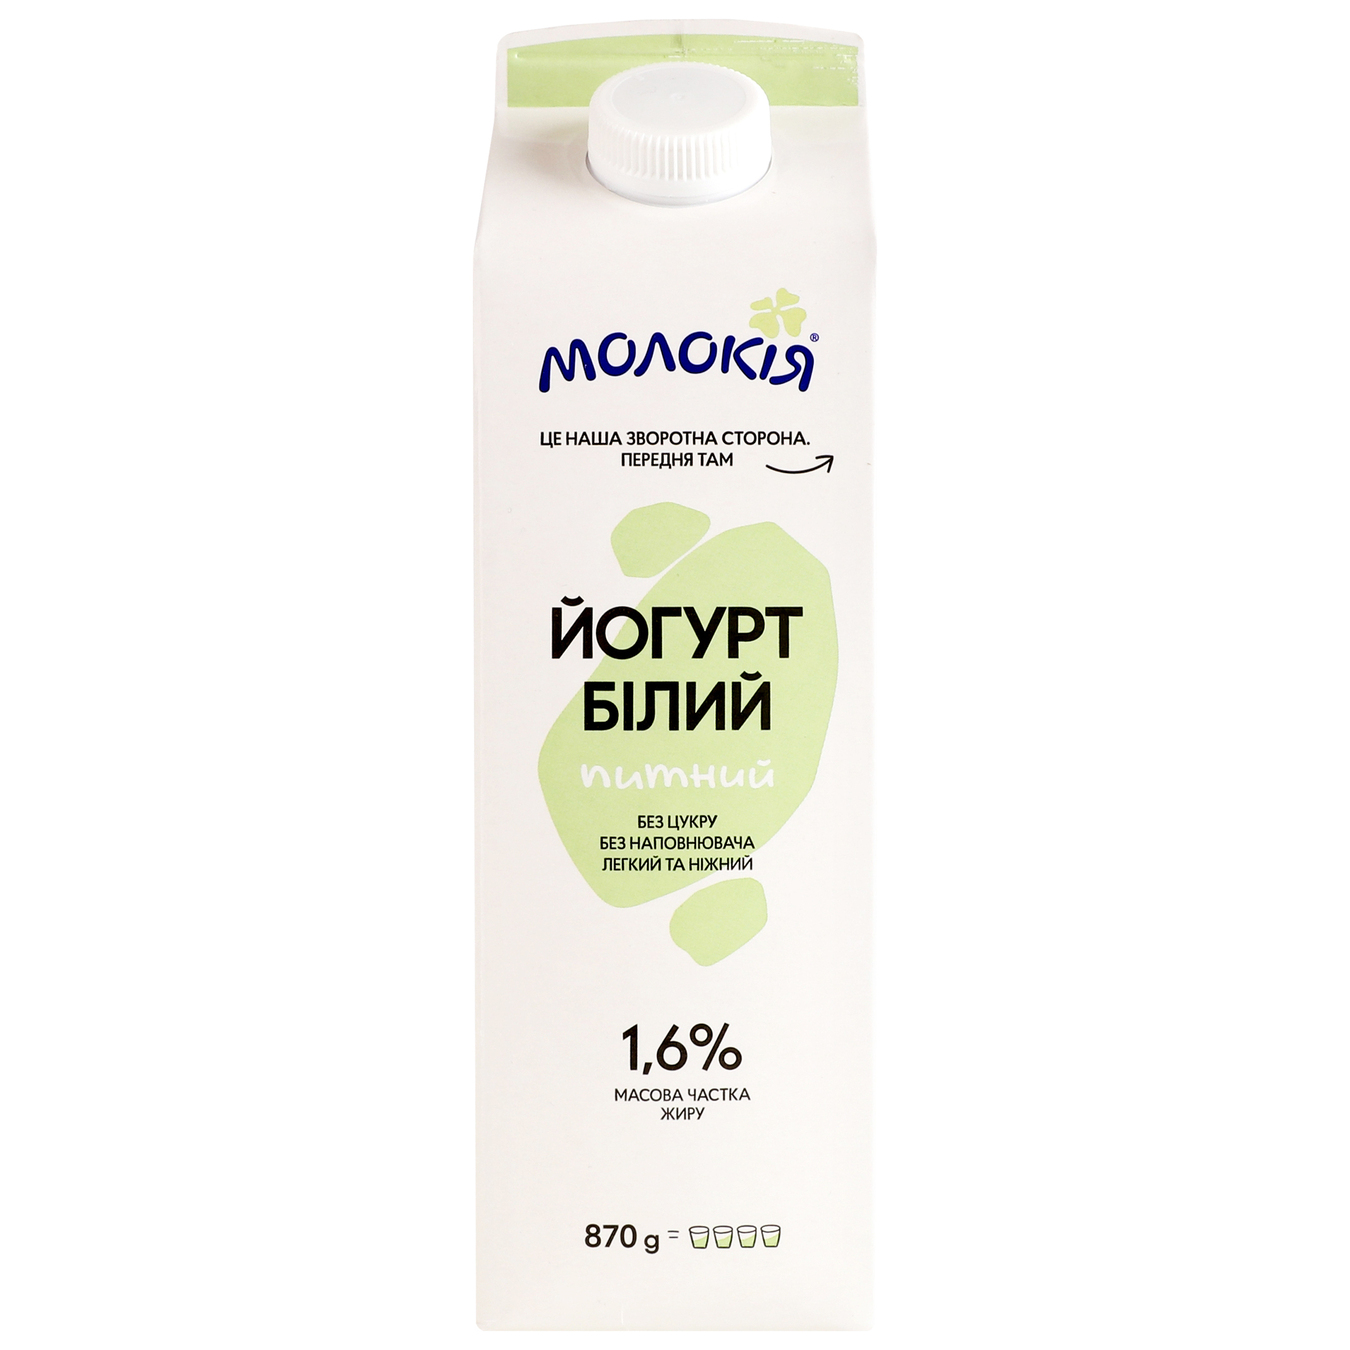 Molokiya White Yogurt 1,6% 870g